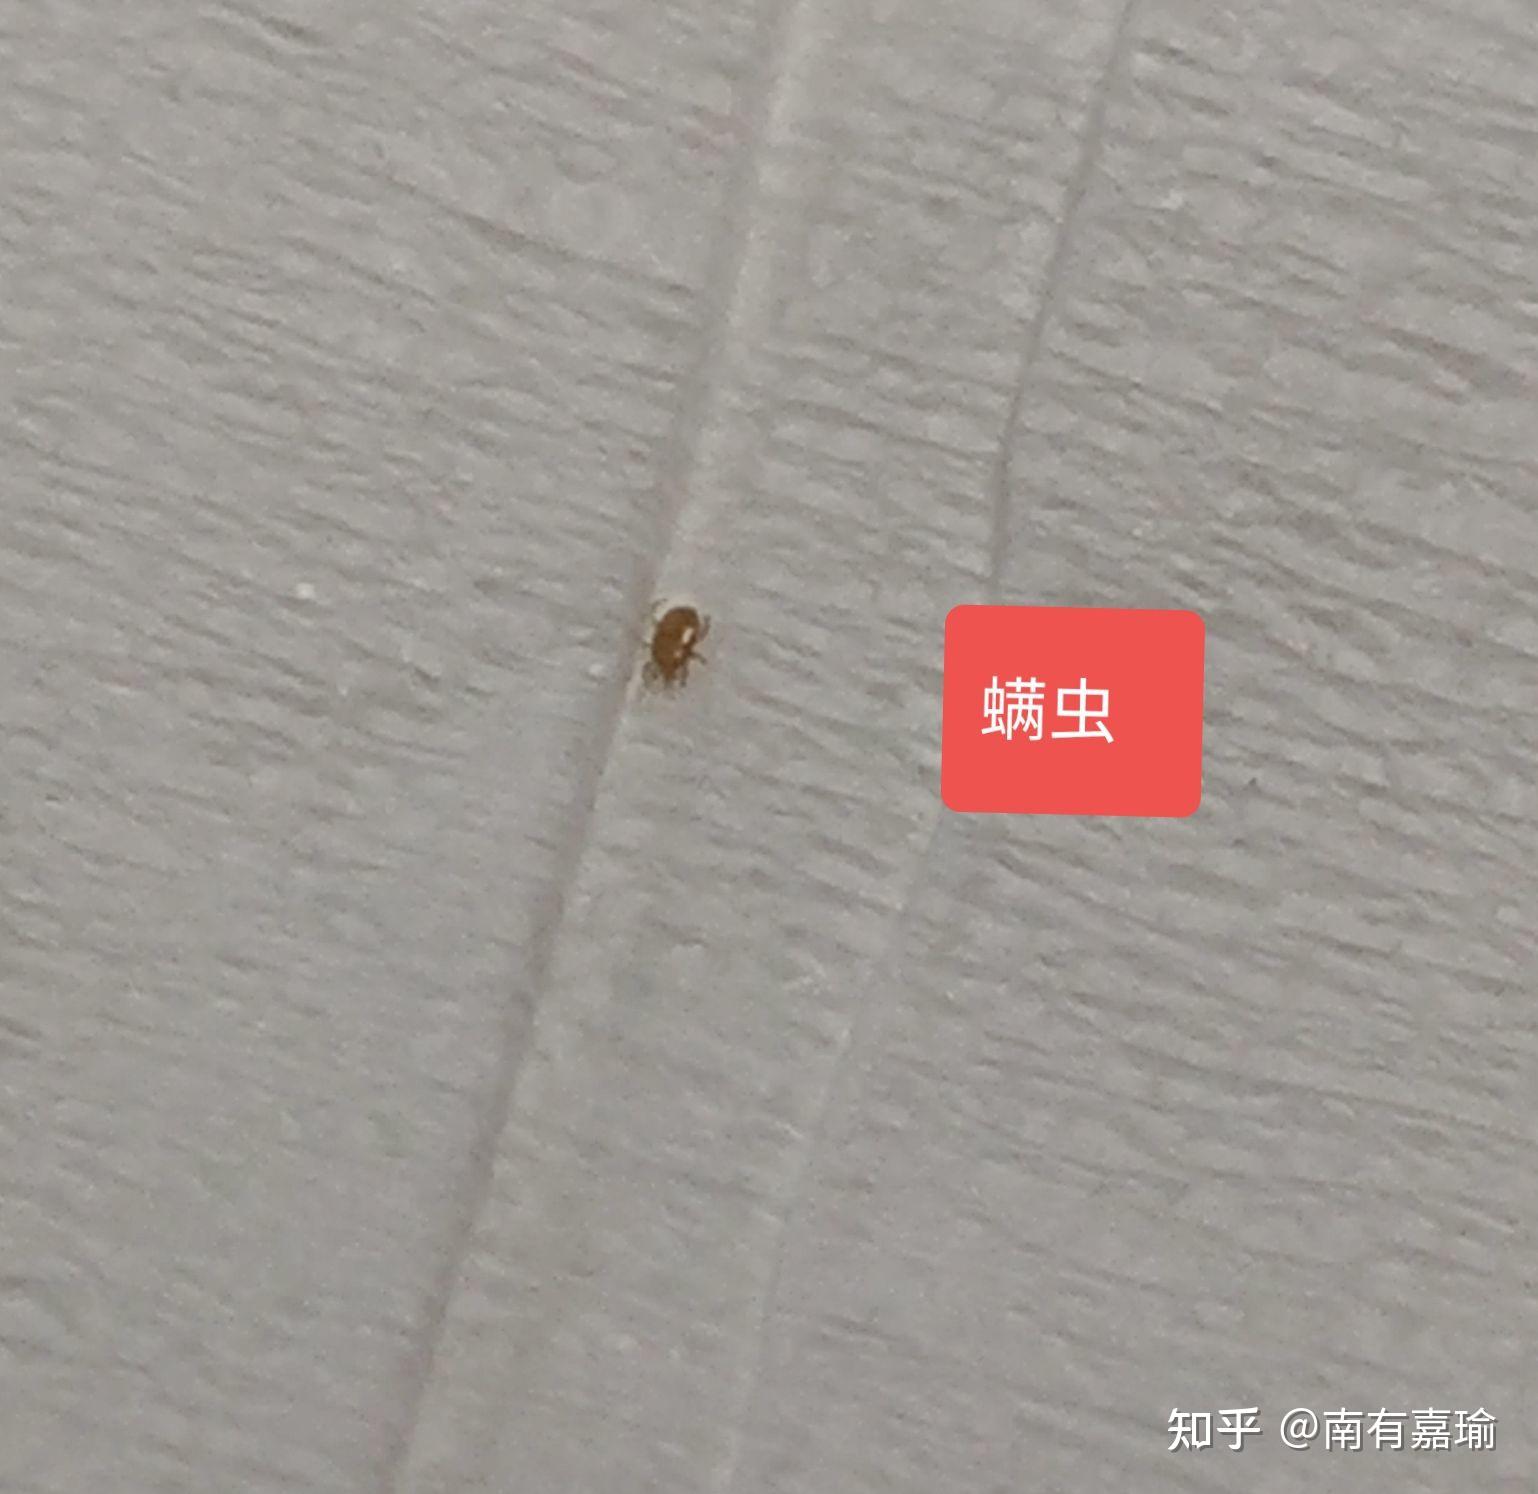 求助请问这是什么虫子特别小是虱子吗